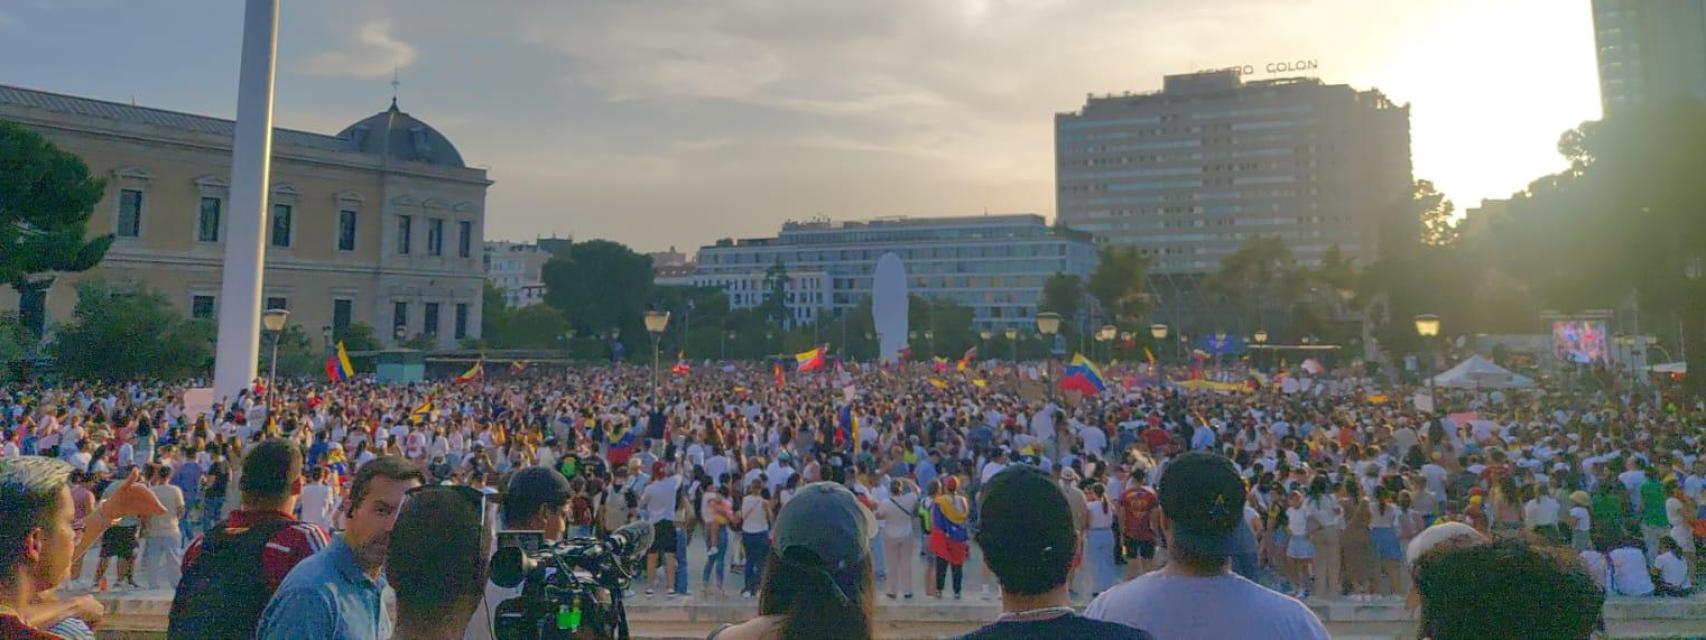 Miles de manifestantes en la concentración en Colón contra el régimen de Maduro.